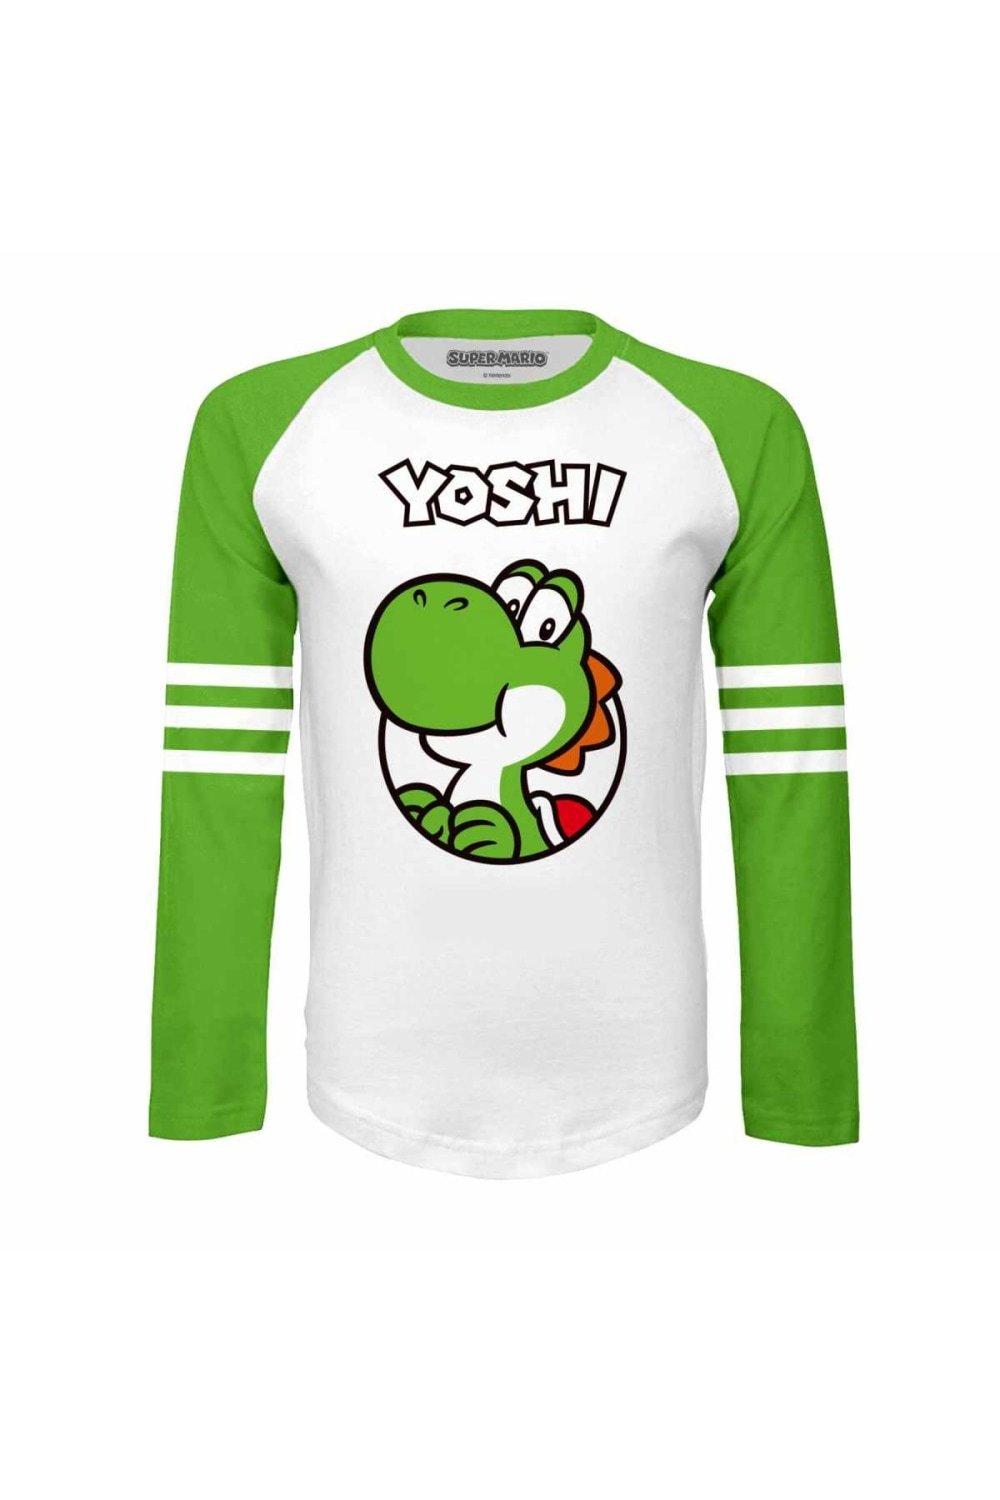 Yoshi Since 1990 Long-Sleeved T-Shirt